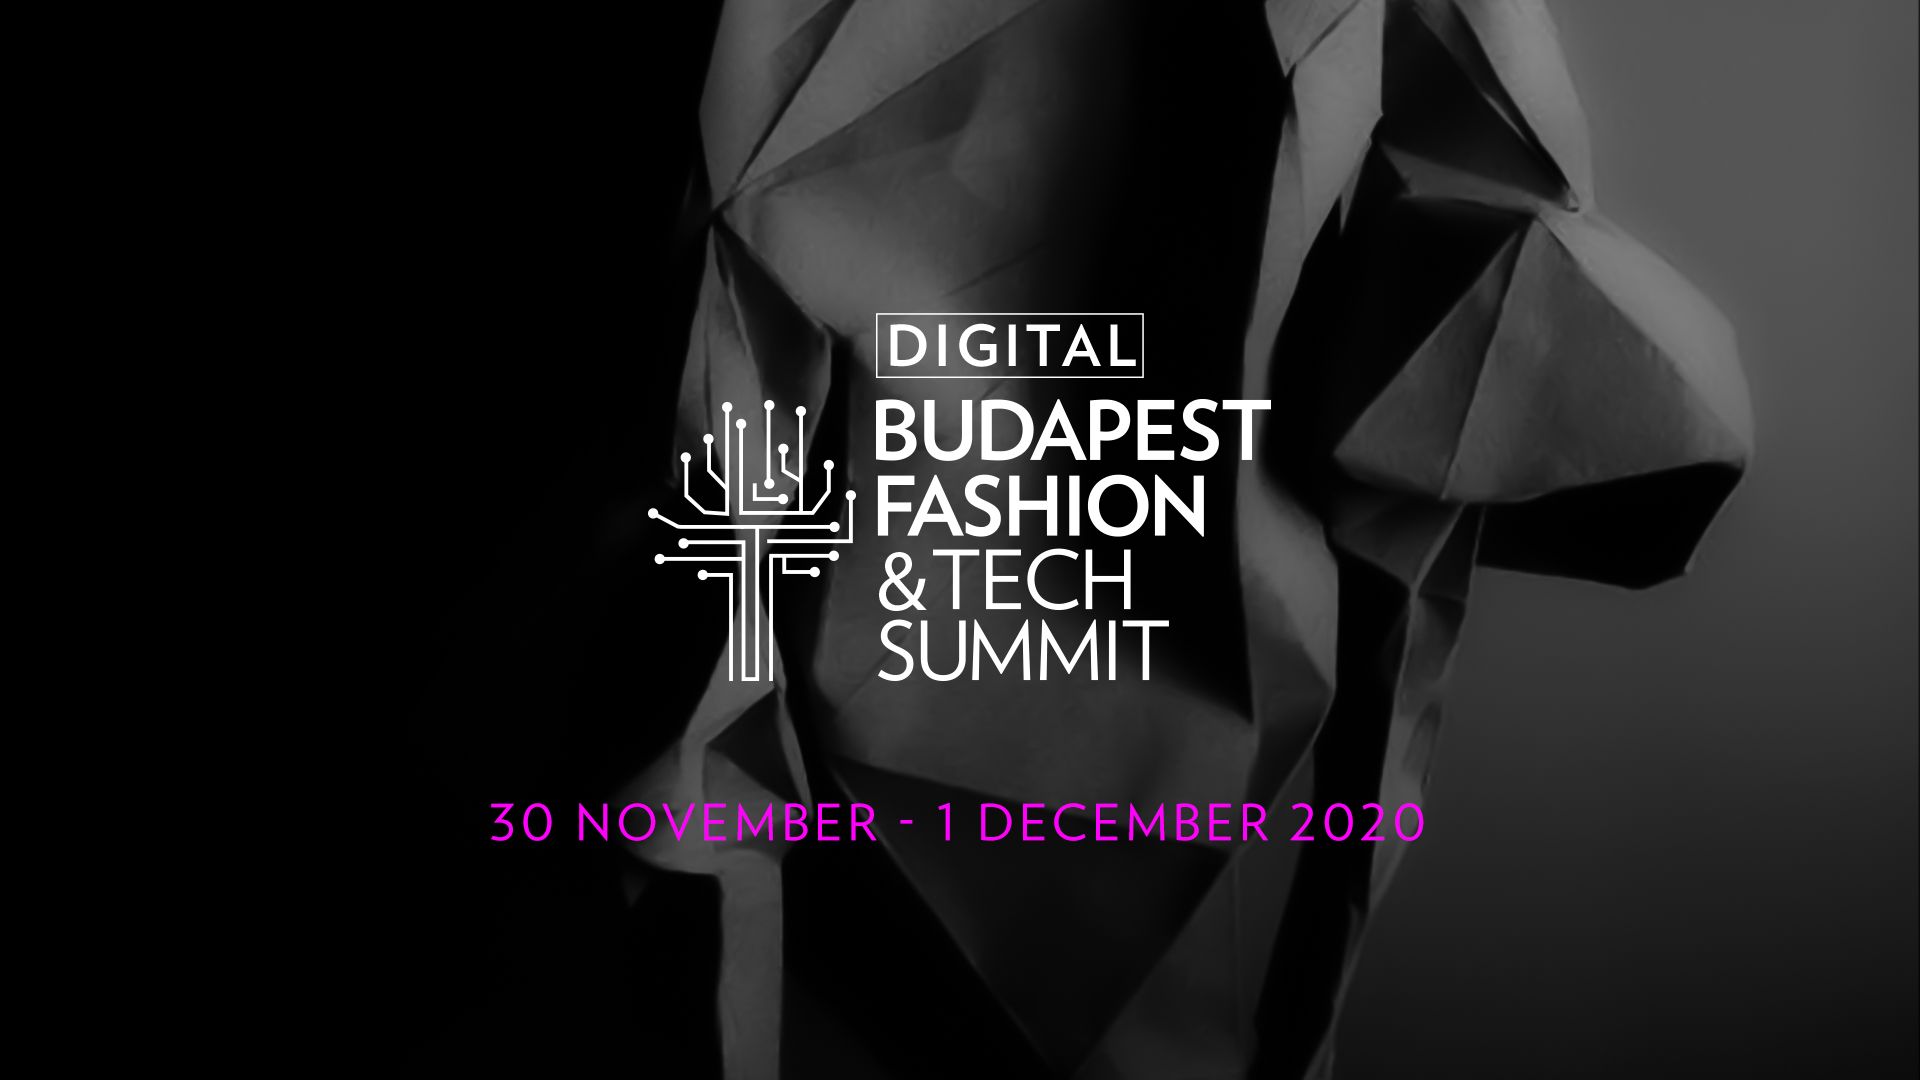 Anna Dello Russo to open Budapest Fashion & Tech Summit